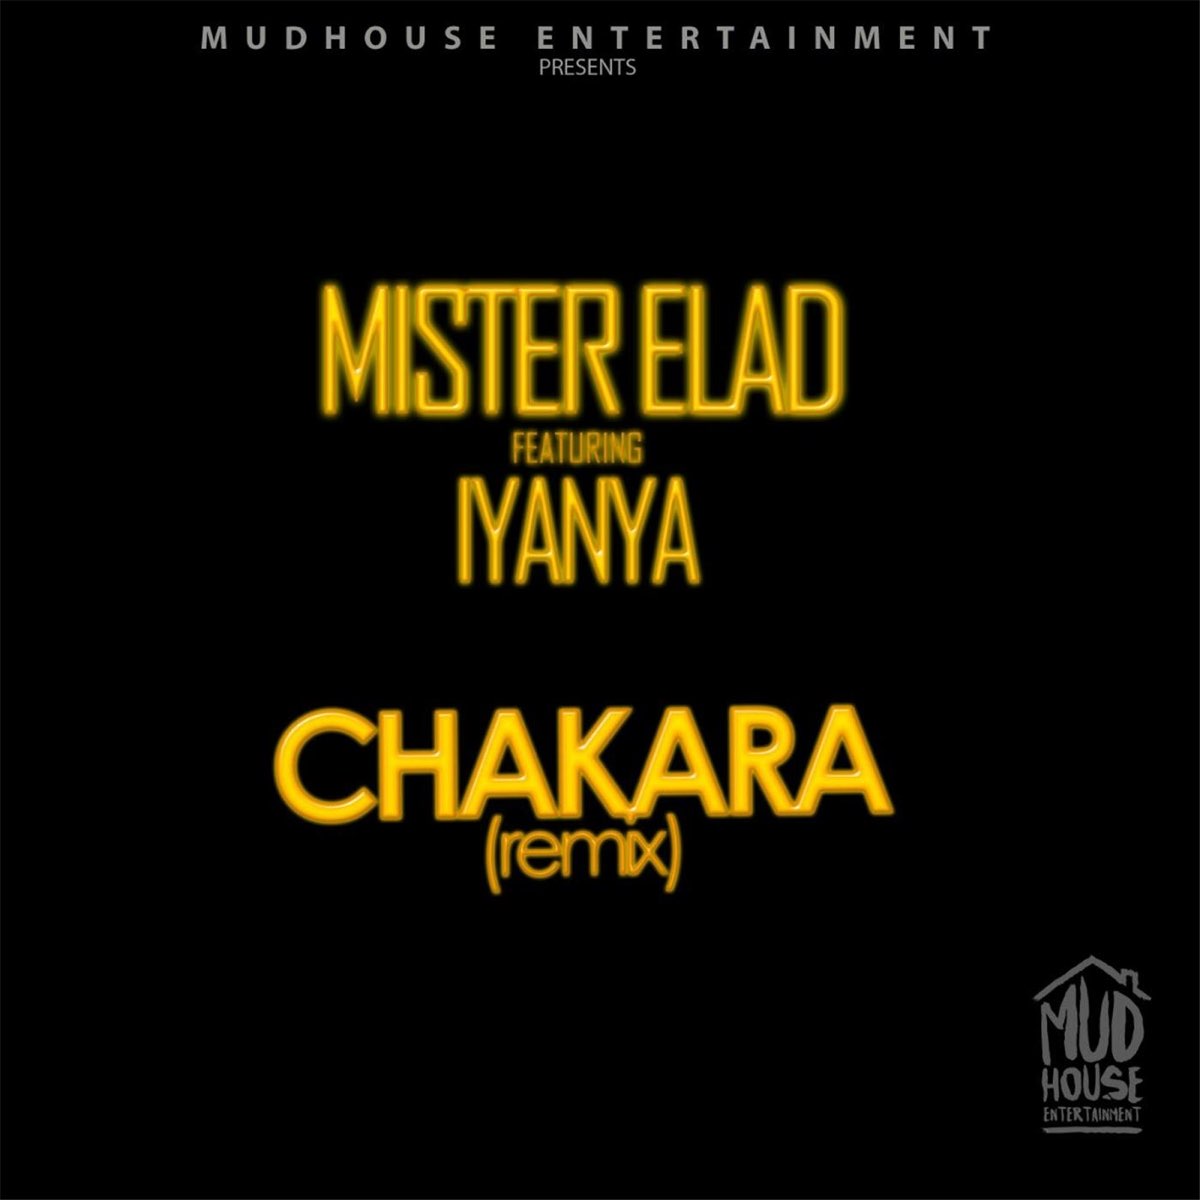 I like the way remix. Chakara.